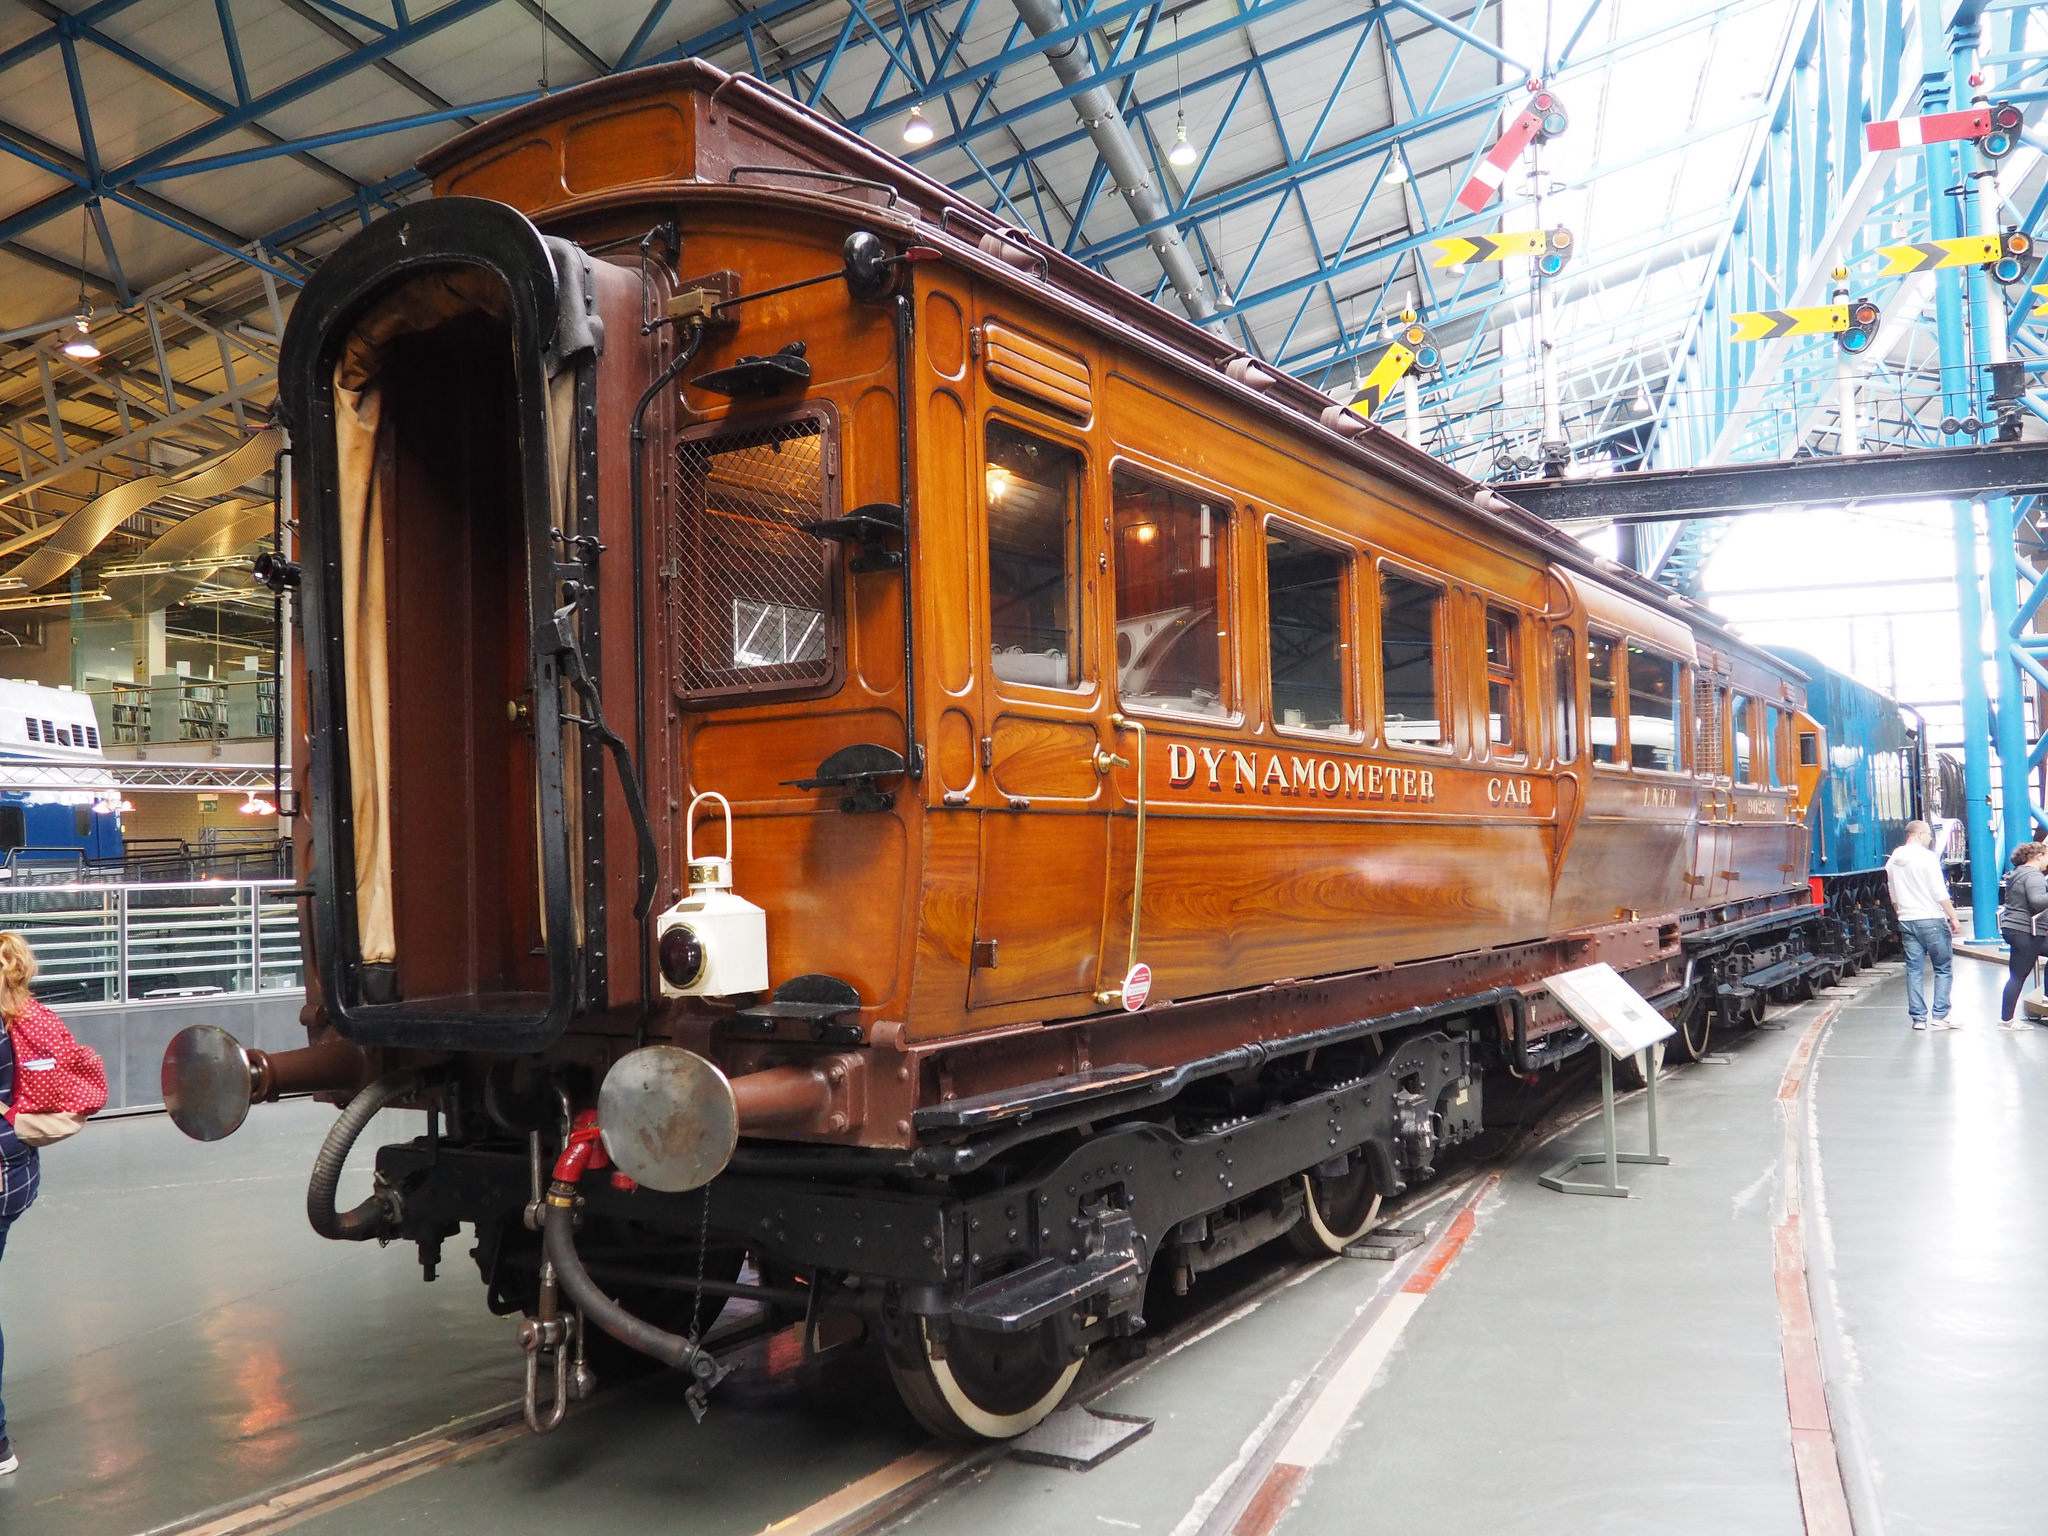 national railway museum5 National Railway Museum in York